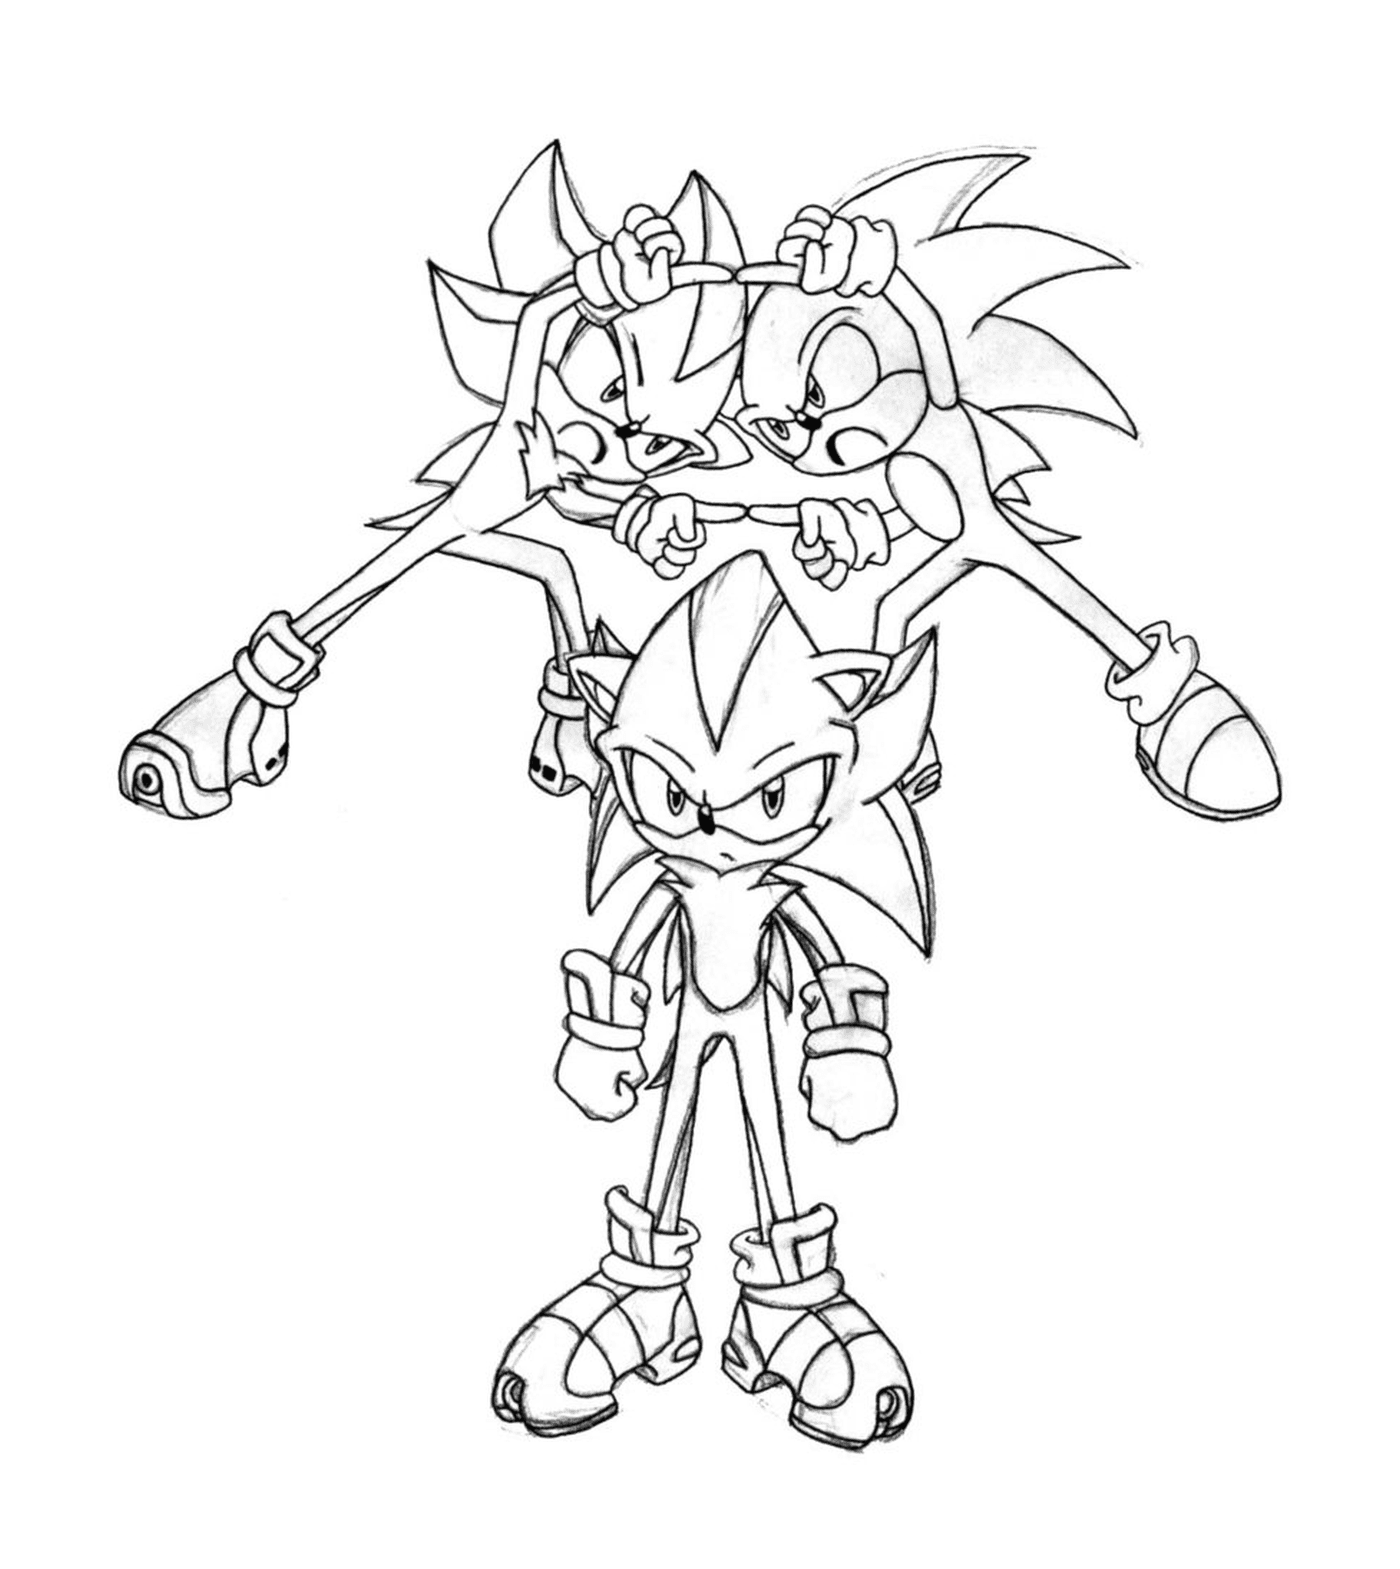  Sonic voller Energie 